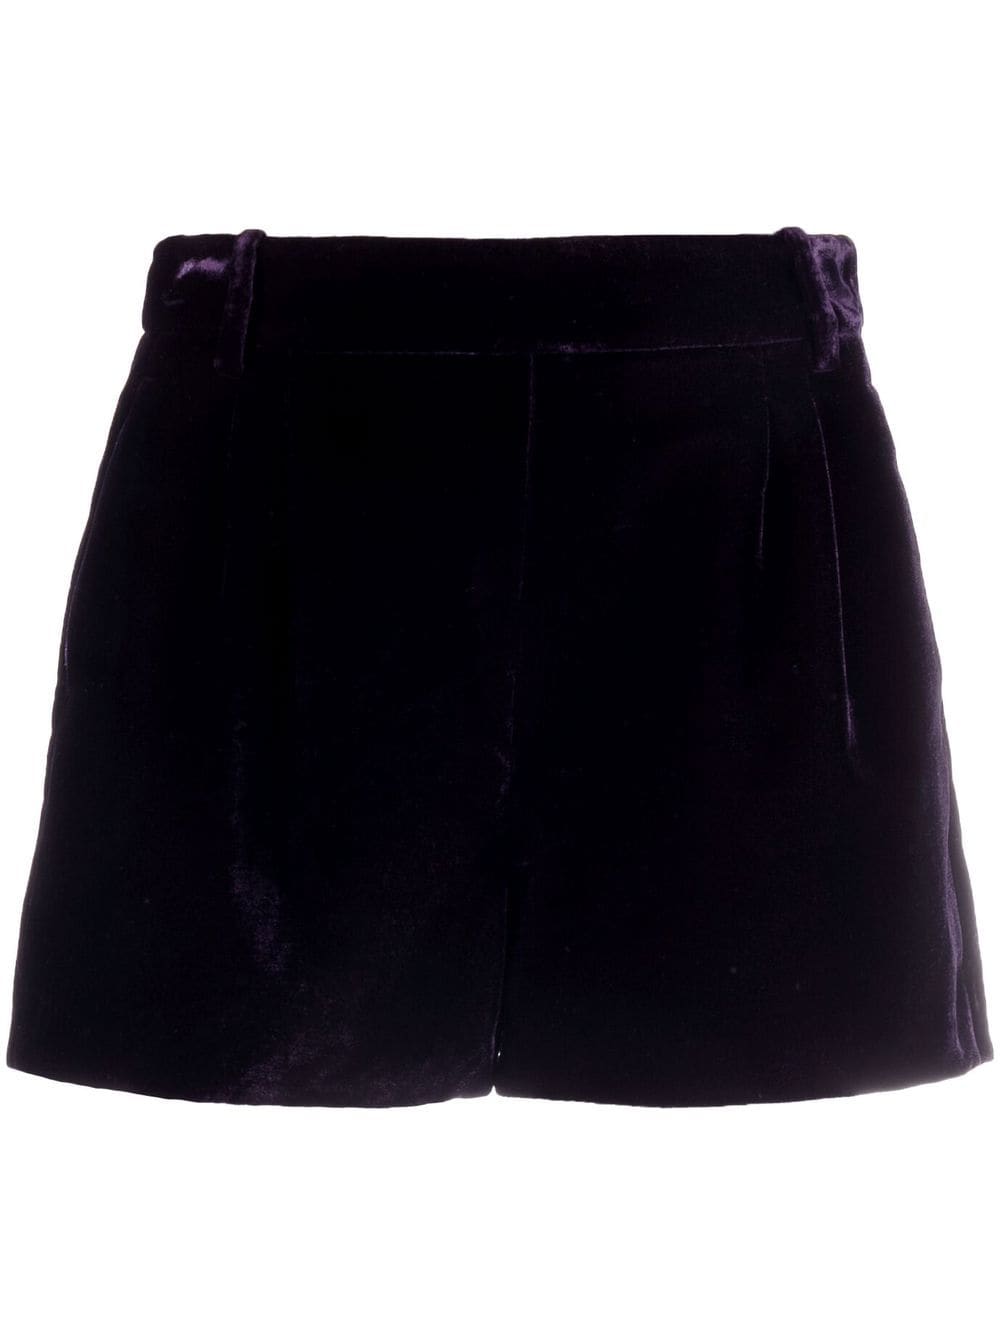 high-waisted velvet shorts